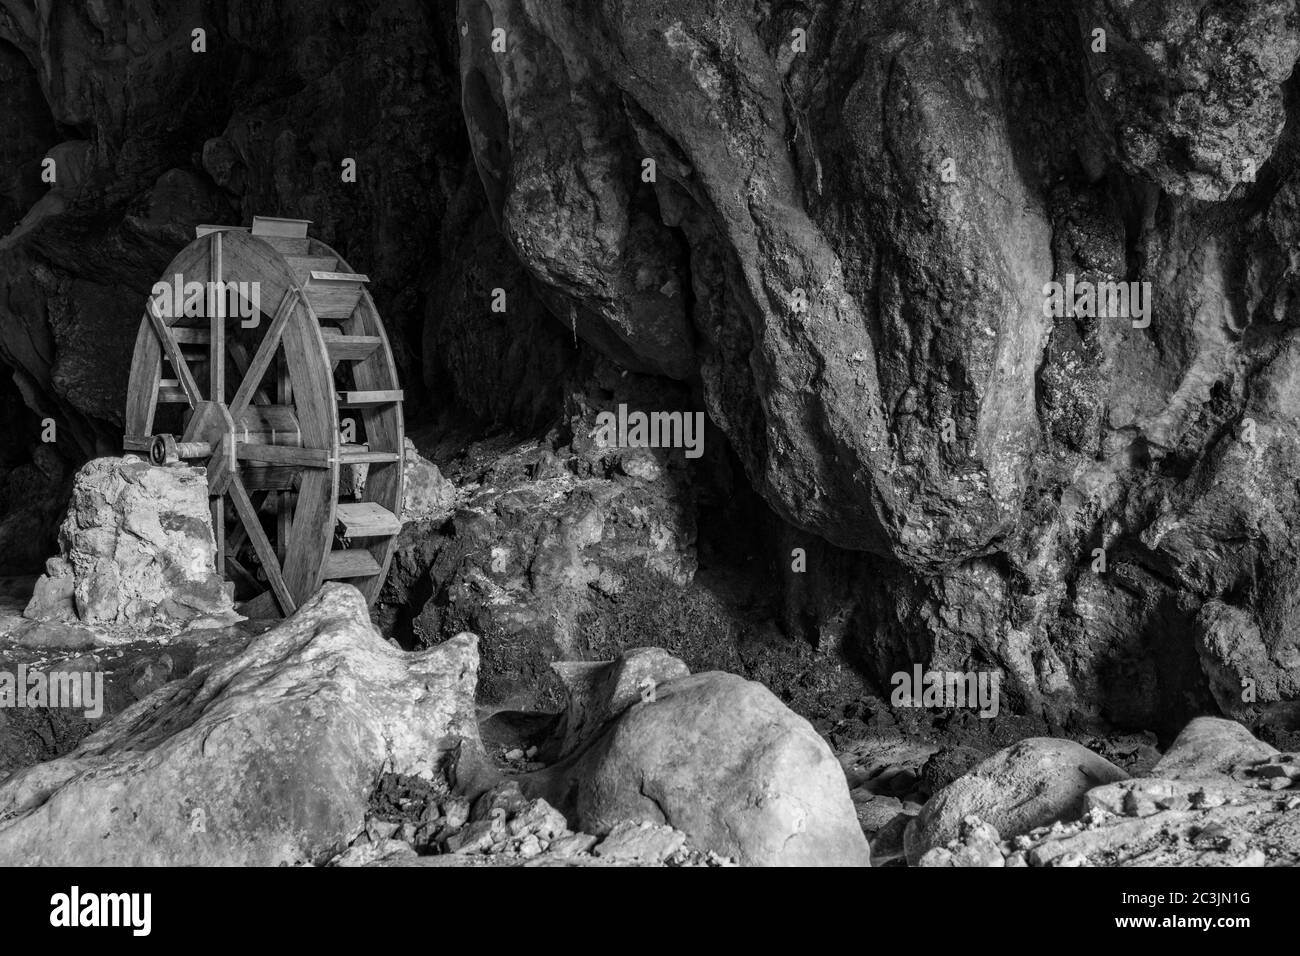 6 octobre 2019 - Bellegra, Rome, Latium, Italie - les grottes karstiques, appelées 'Grotte dell'Arco' (grottes de l'Arc). La roue d'un ancien moulin, maintenant dans le disus Banque D'Images